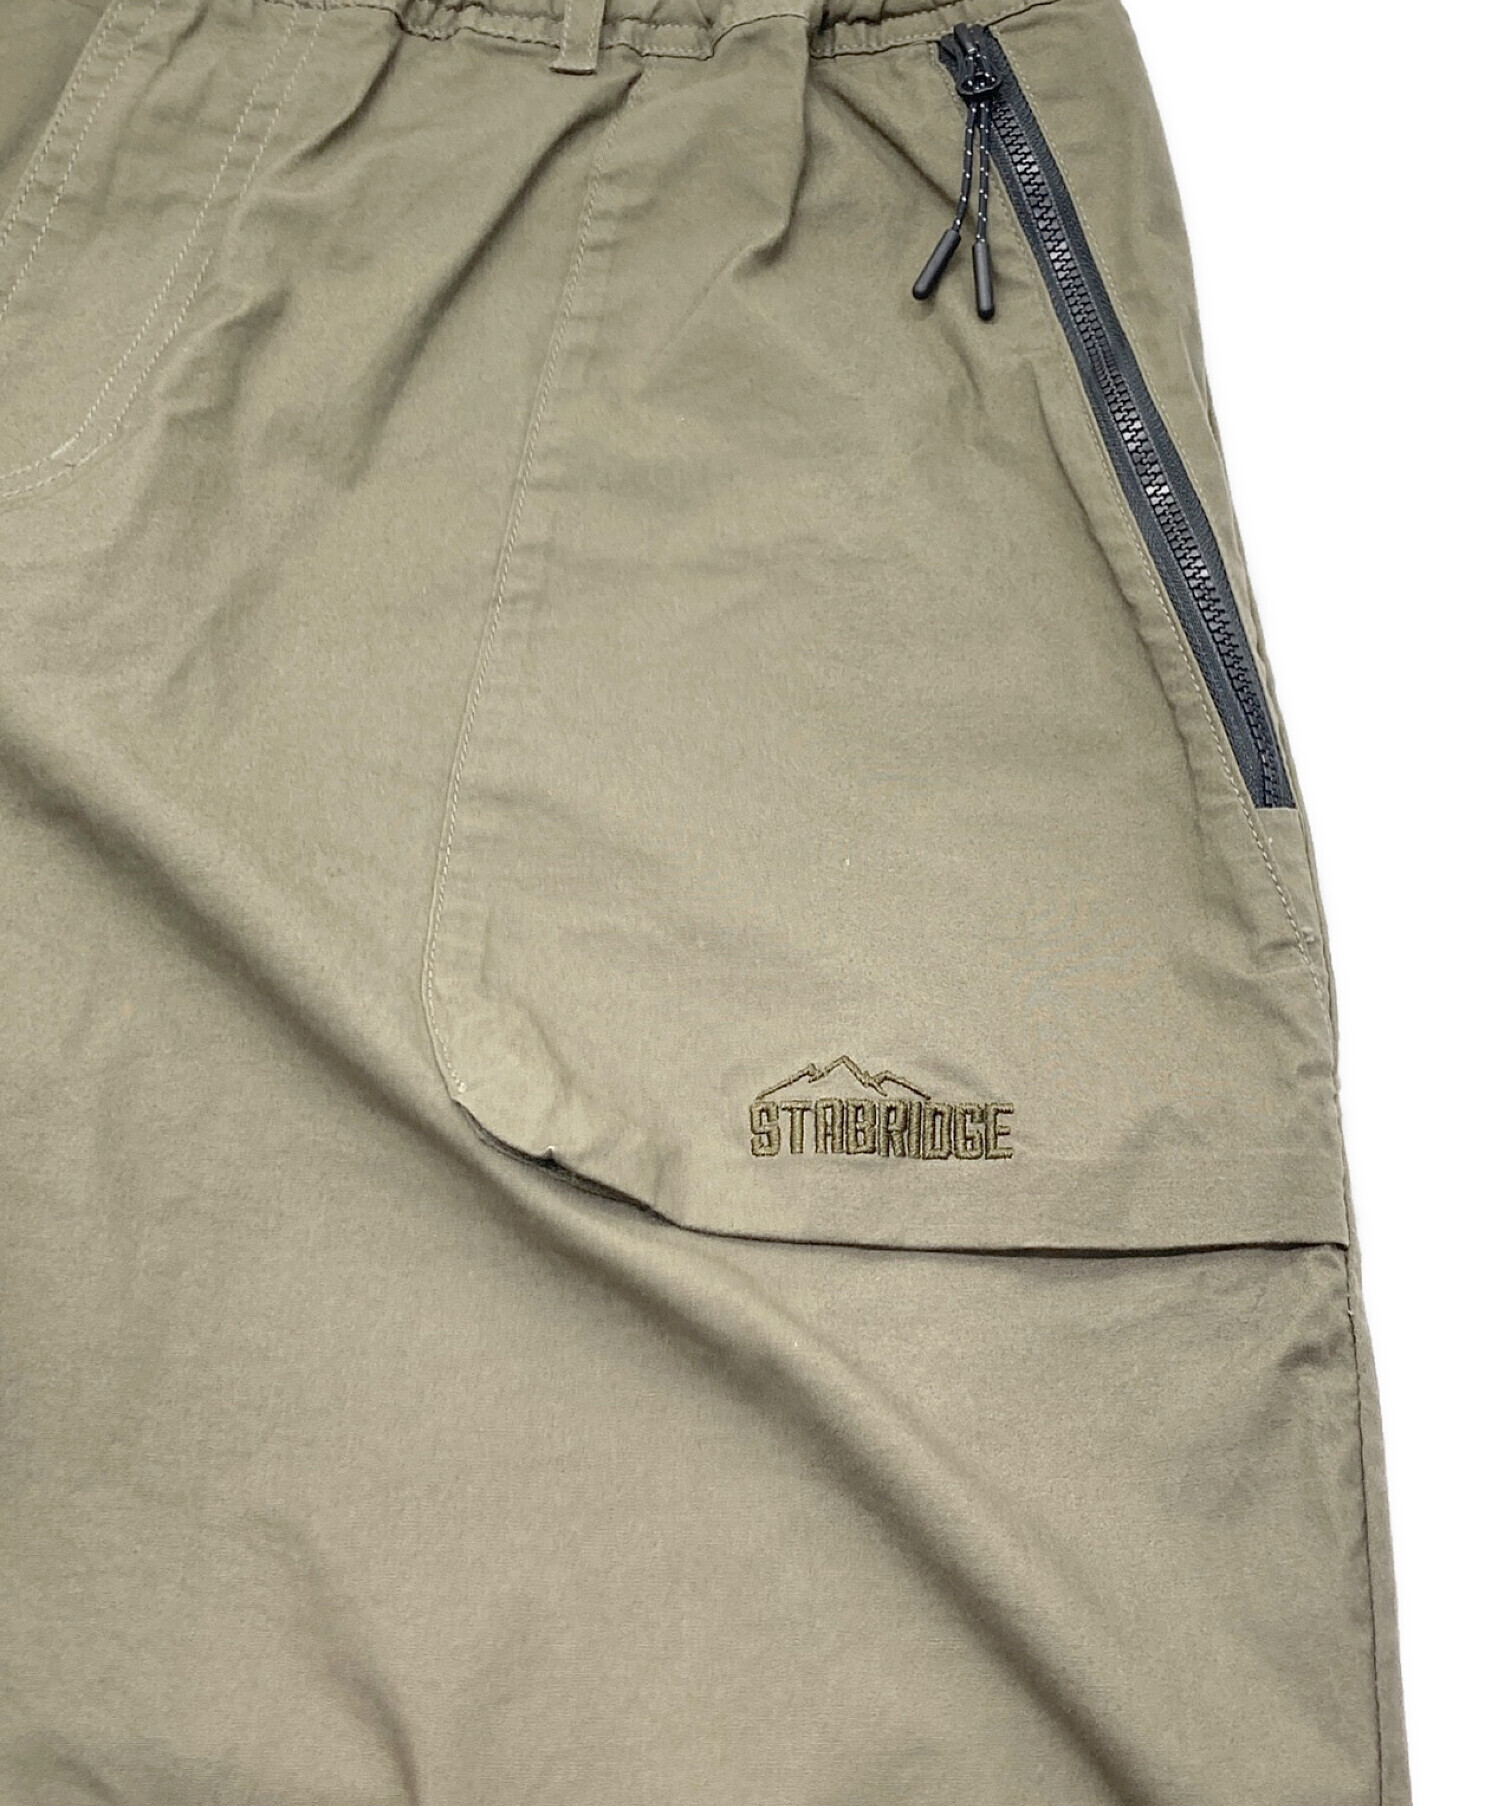 GRAMICCI (グラミチ) STABRIDGE (スタブリッジ) City Walker Pants カーキ サイズ:XL